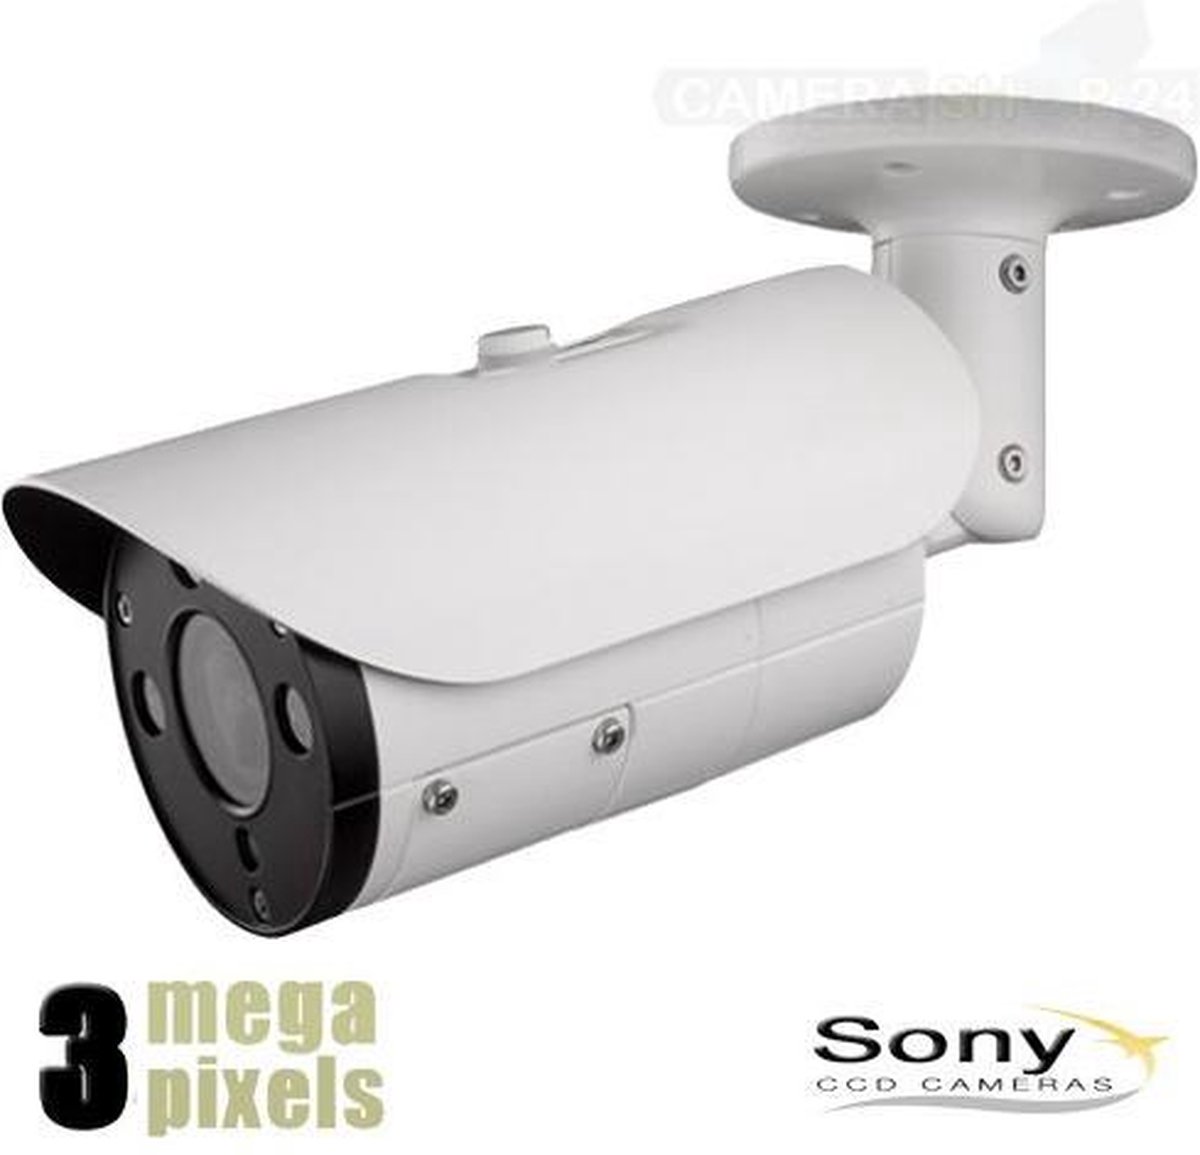 Aanbieding! IP Camera - 3 Megapixel - Nachtzicht 40/50m - Motorzoom - PoE - Slimme Detectie - Sony CCD Sensor - Voordelig Geprijsd